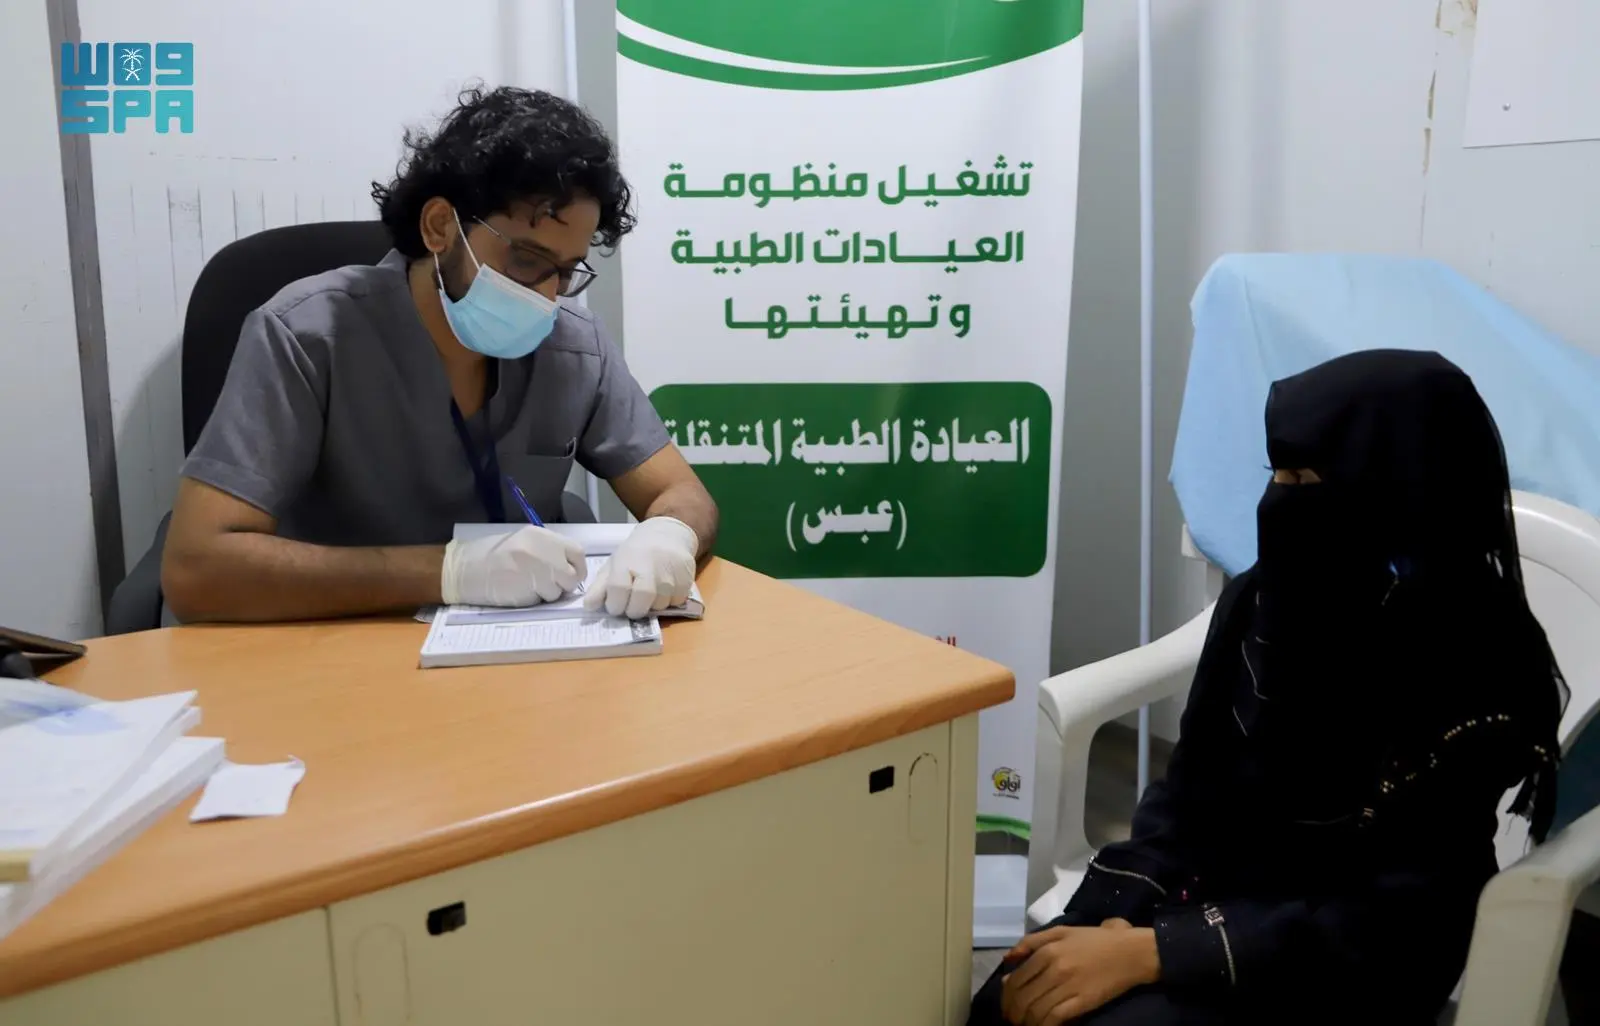 العيادات الطبية المتنقلة لمركز الملك سلمان للإغاثة في عبس تقدم خدماتها العلاجية لـ 483 مستفيدا خلال شهر يوليو الماضي